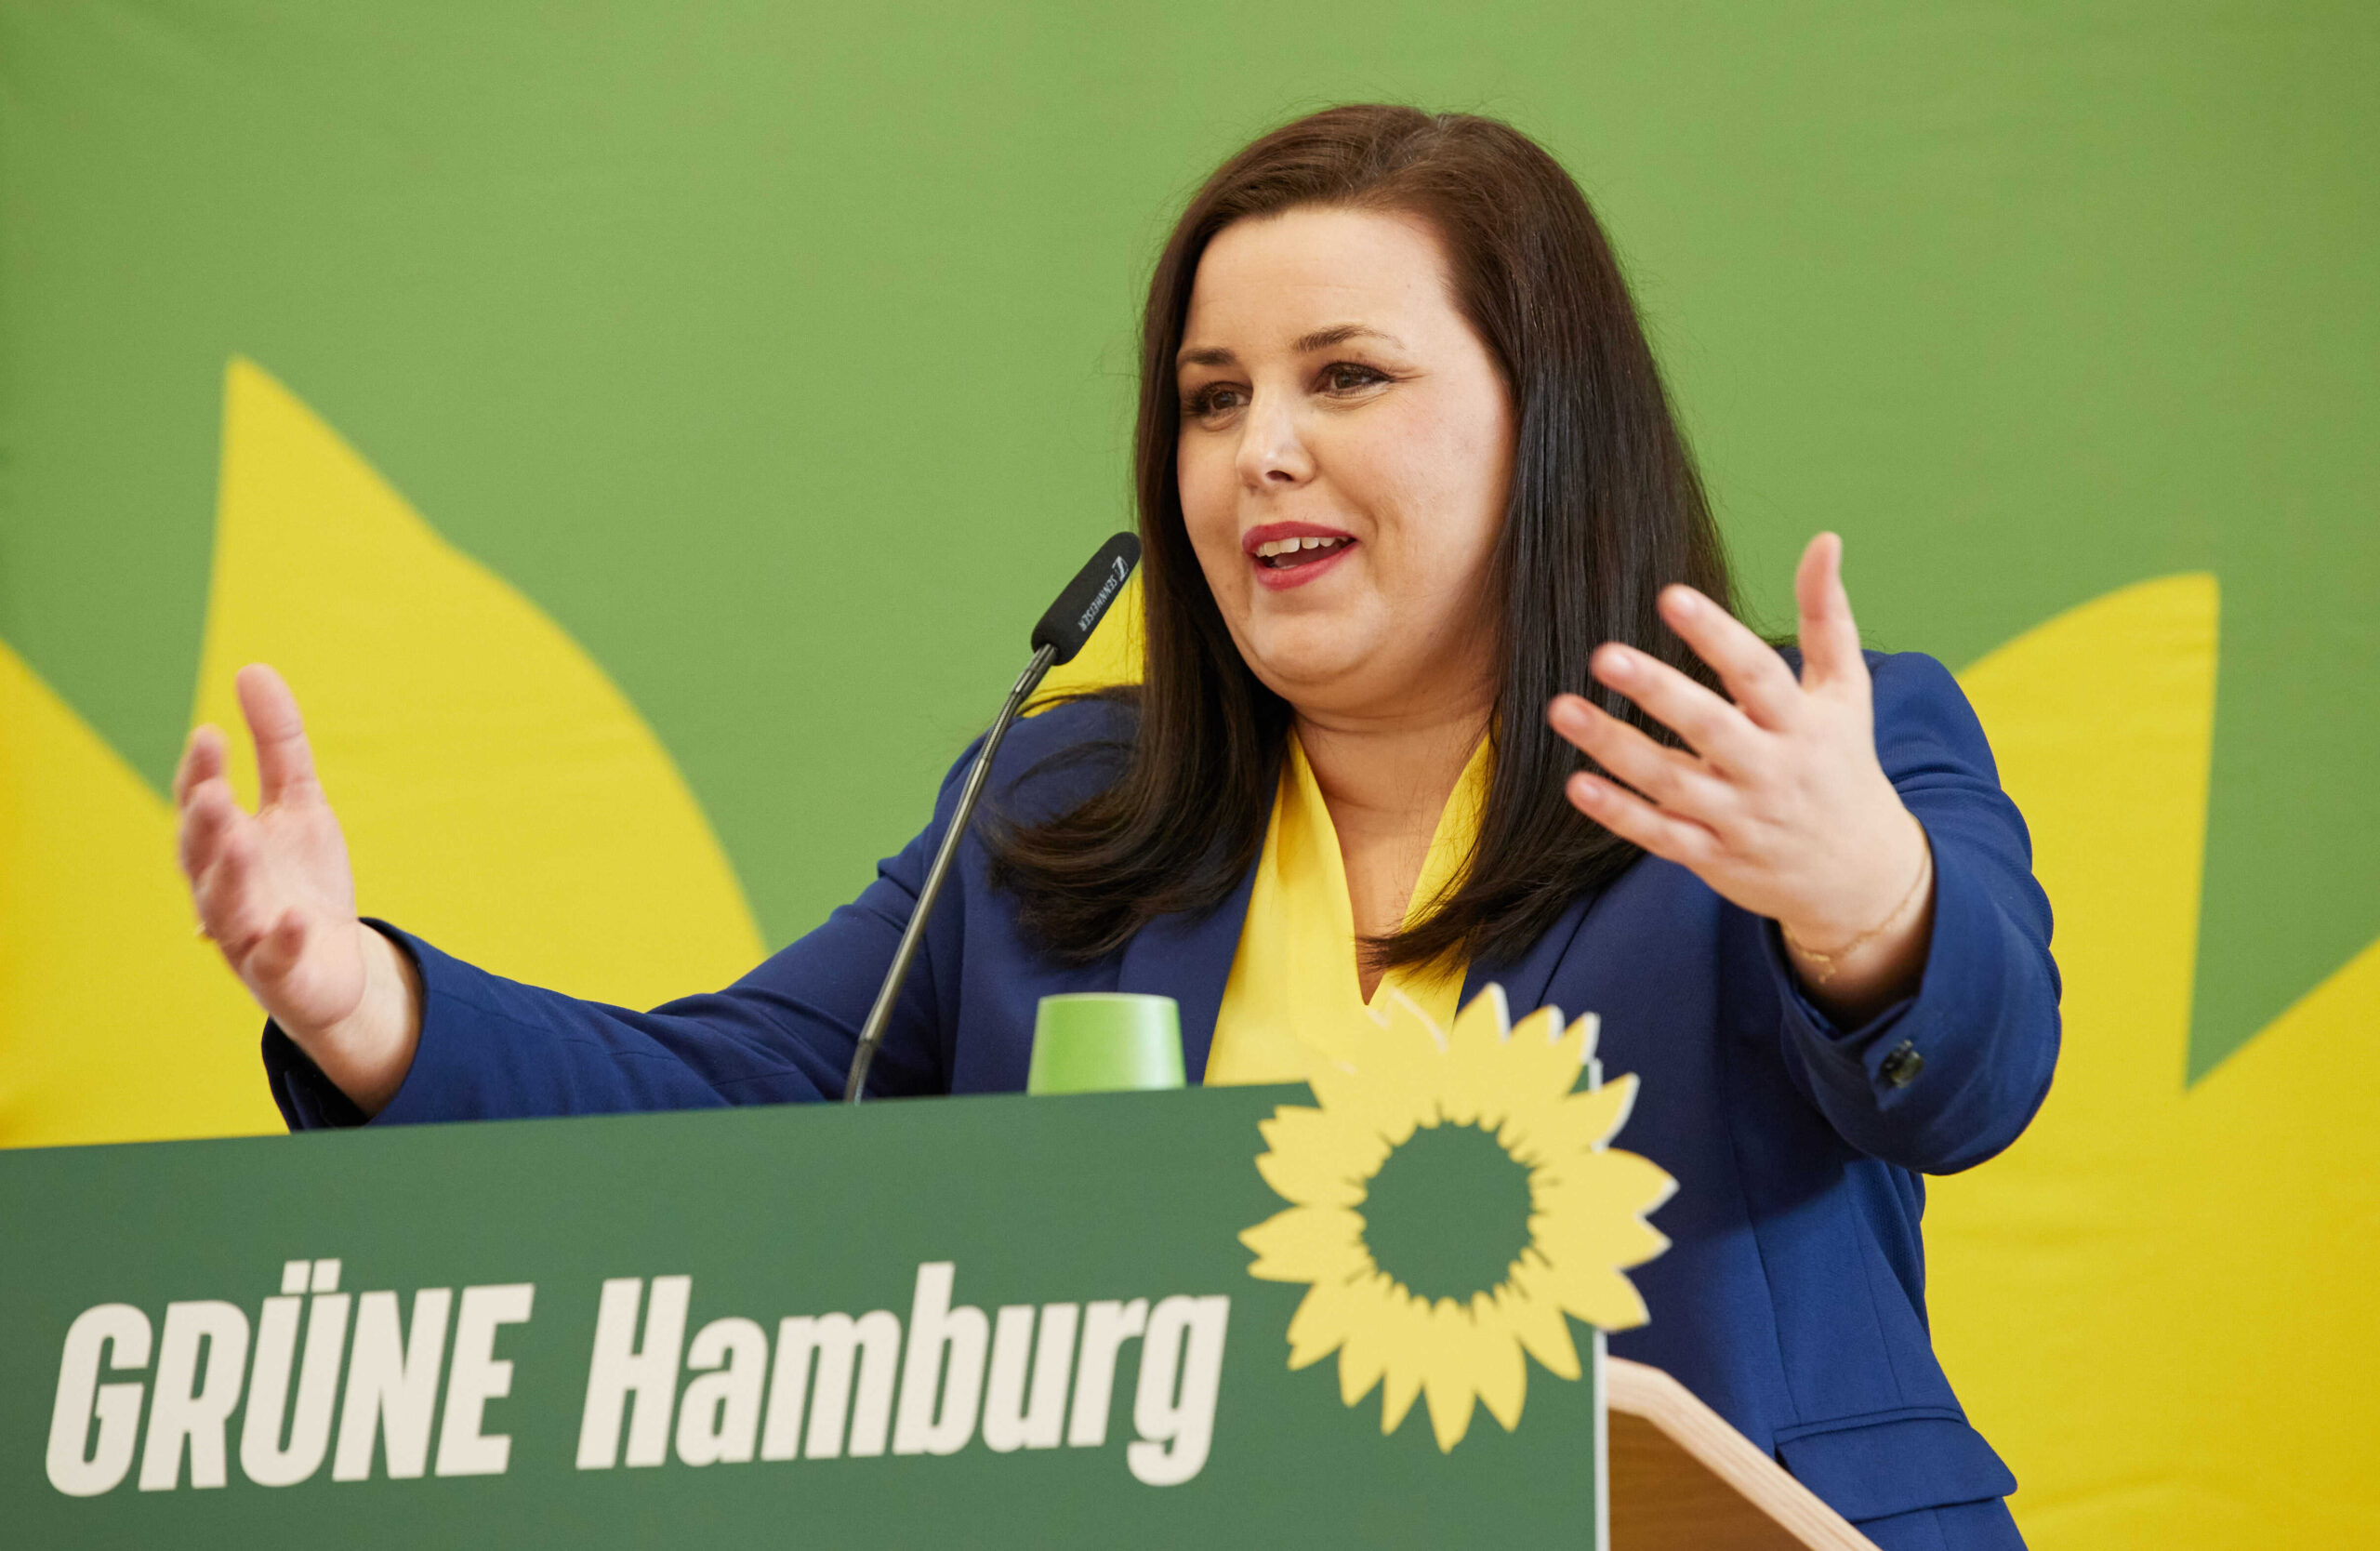 Anna Gallina (Bündnis 90/Die Grünen), Senatorin für Justiz und Verbraucherschutz in Hamburg, spricht auf dem Kleinen Parteitag der Grünen Hamburg über den Ukraine-Konflikt.